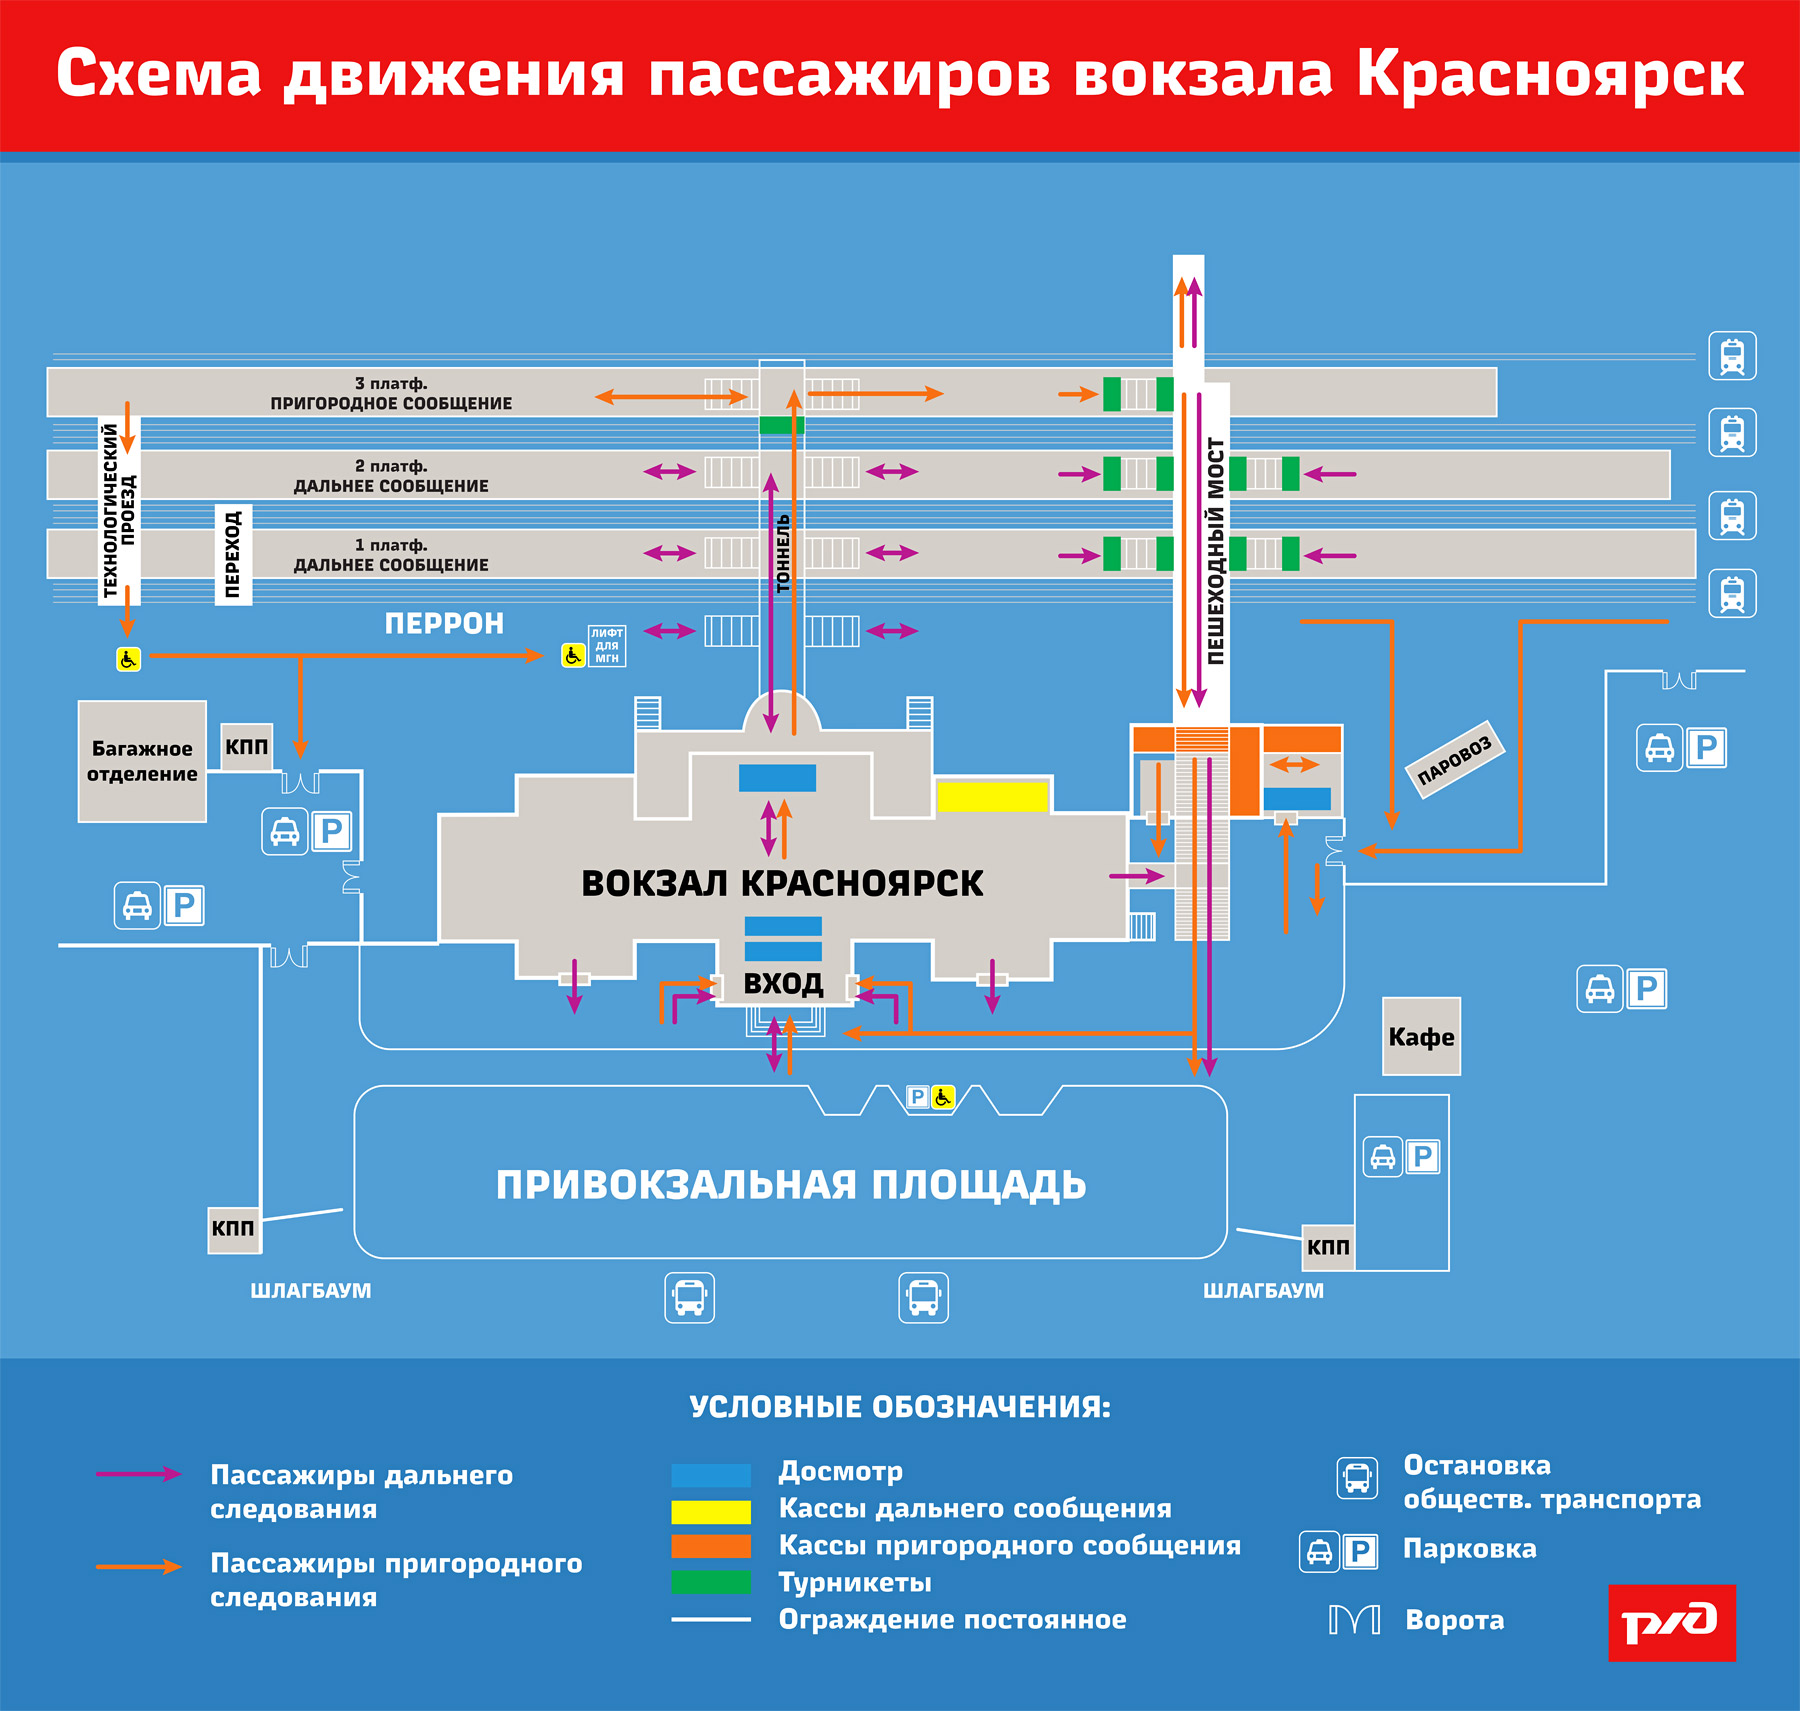 Московский вокзал в санкт-петербурге: ближайшее метро, как добраться, расписание поездов, схема, история